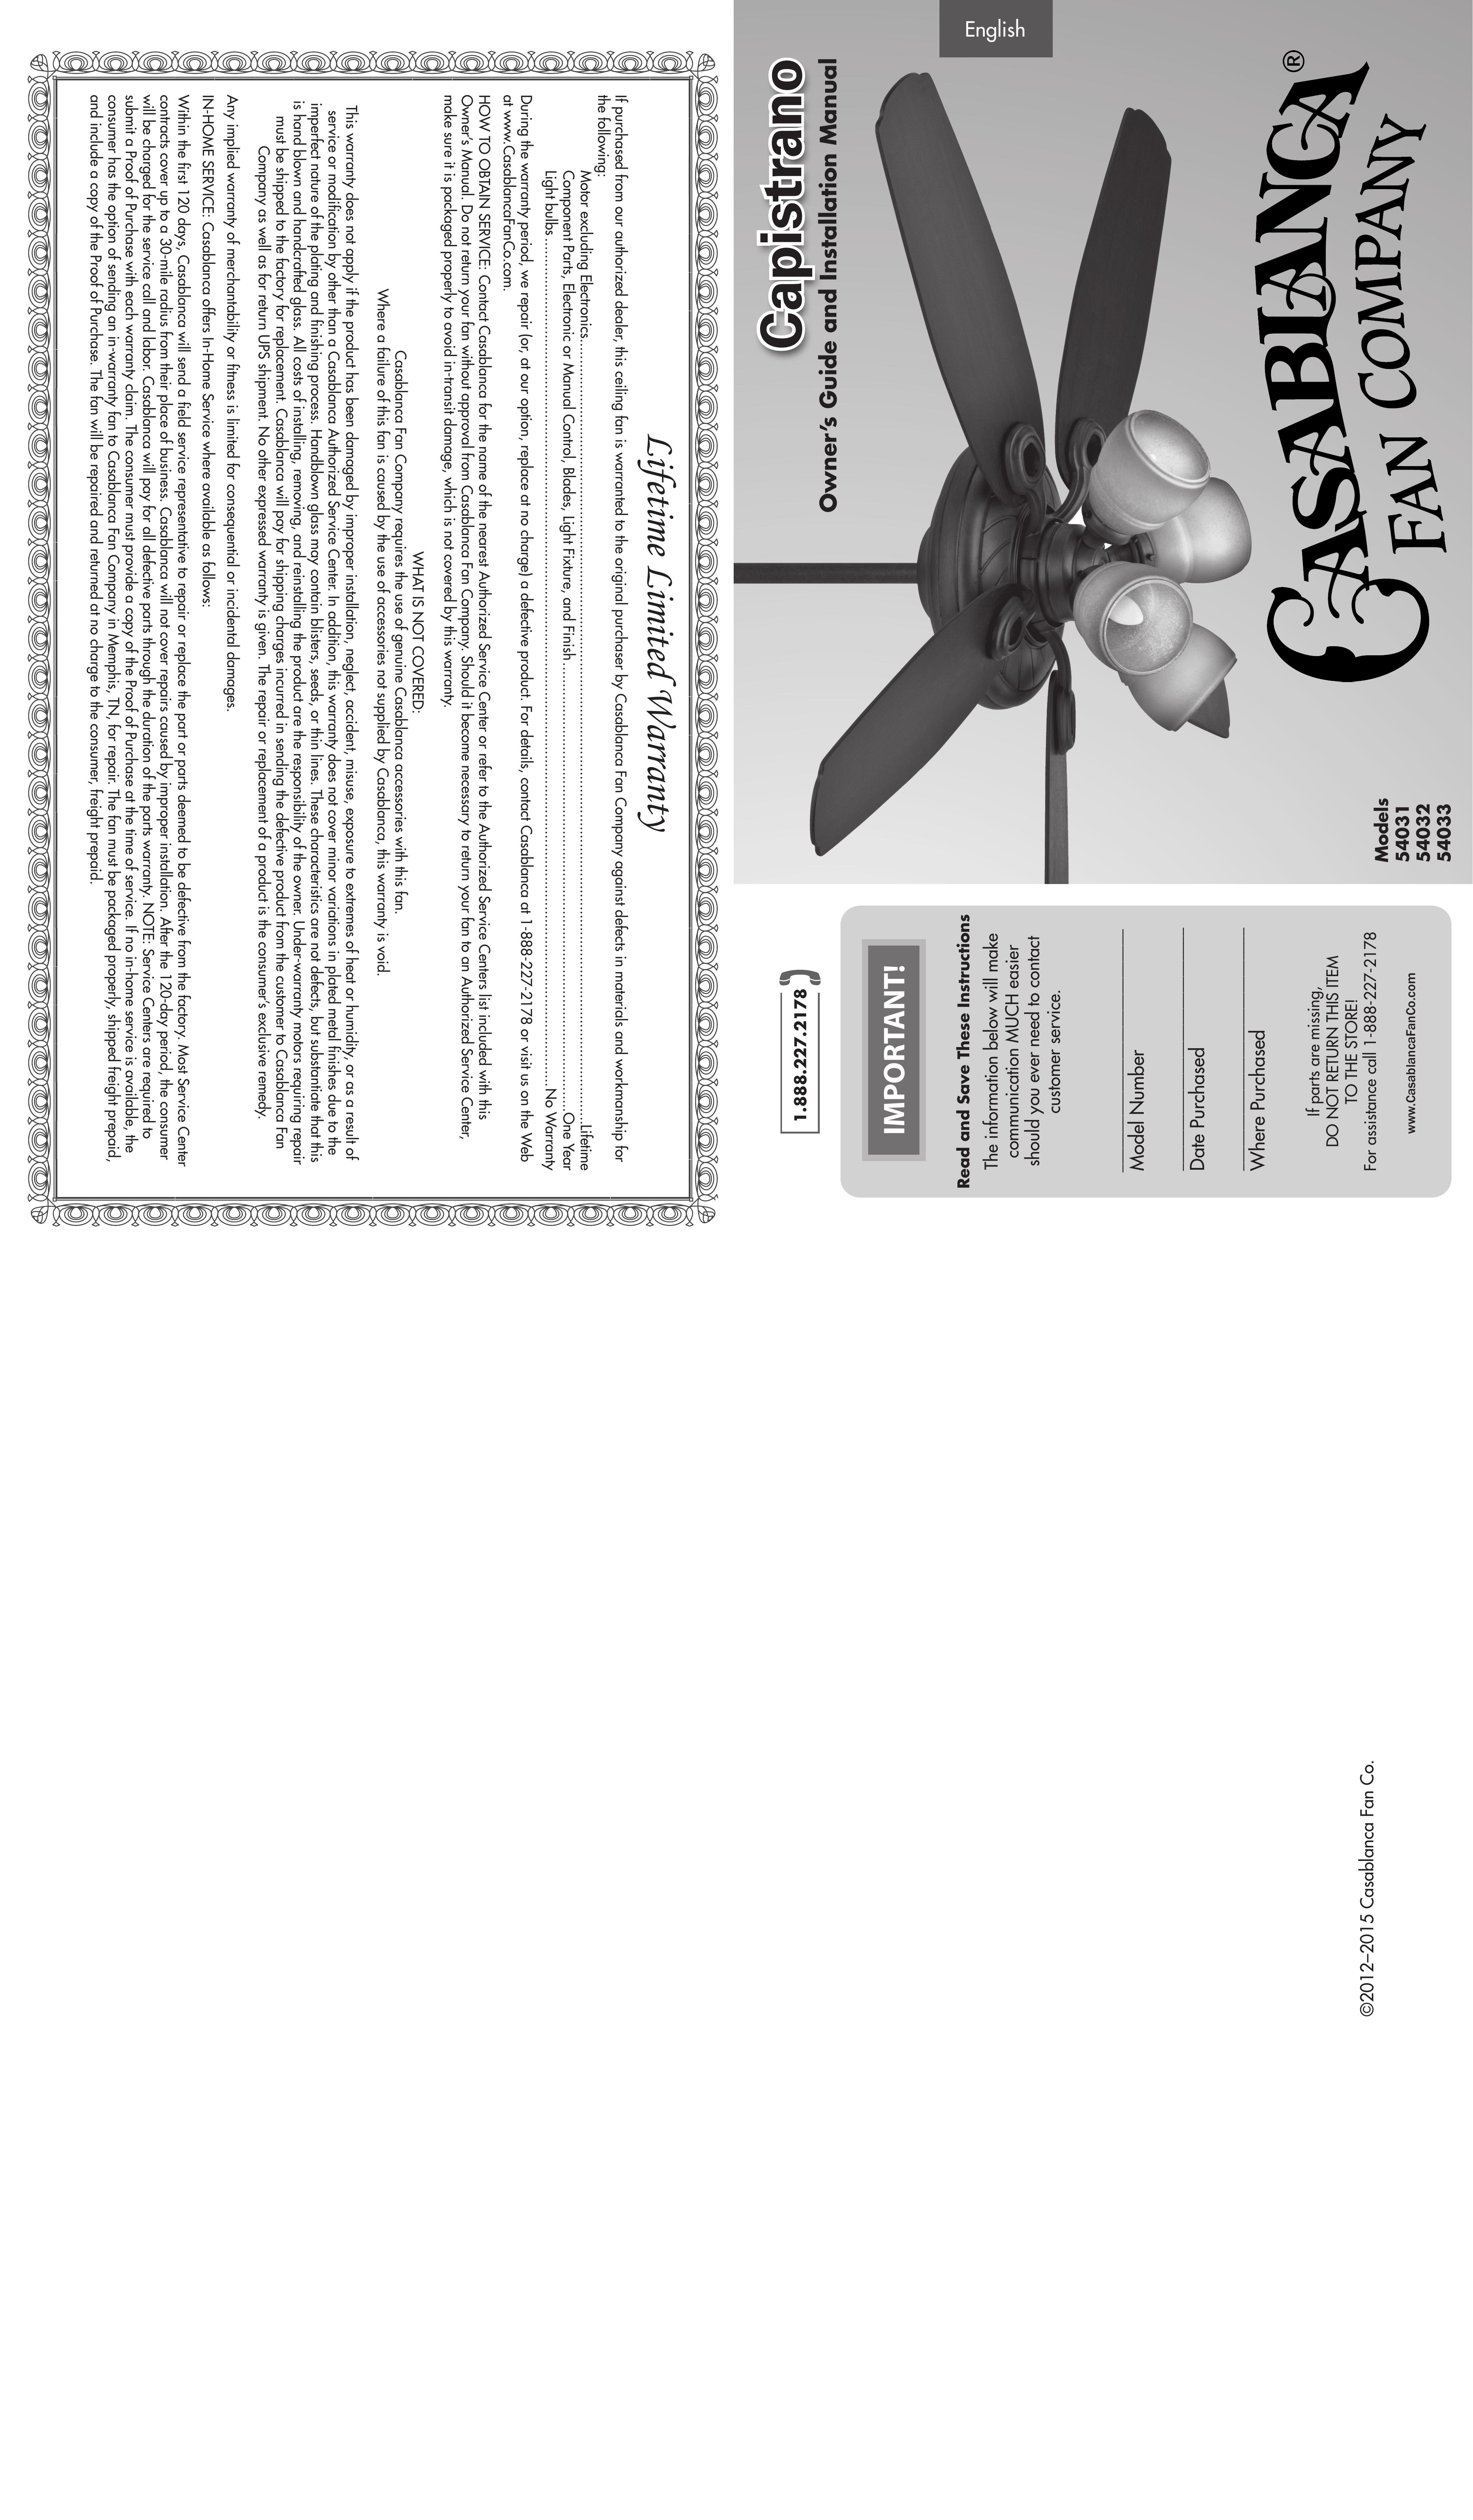 Casablanca Fan Company 54032 Outdoor Ceiling Fan User Manual